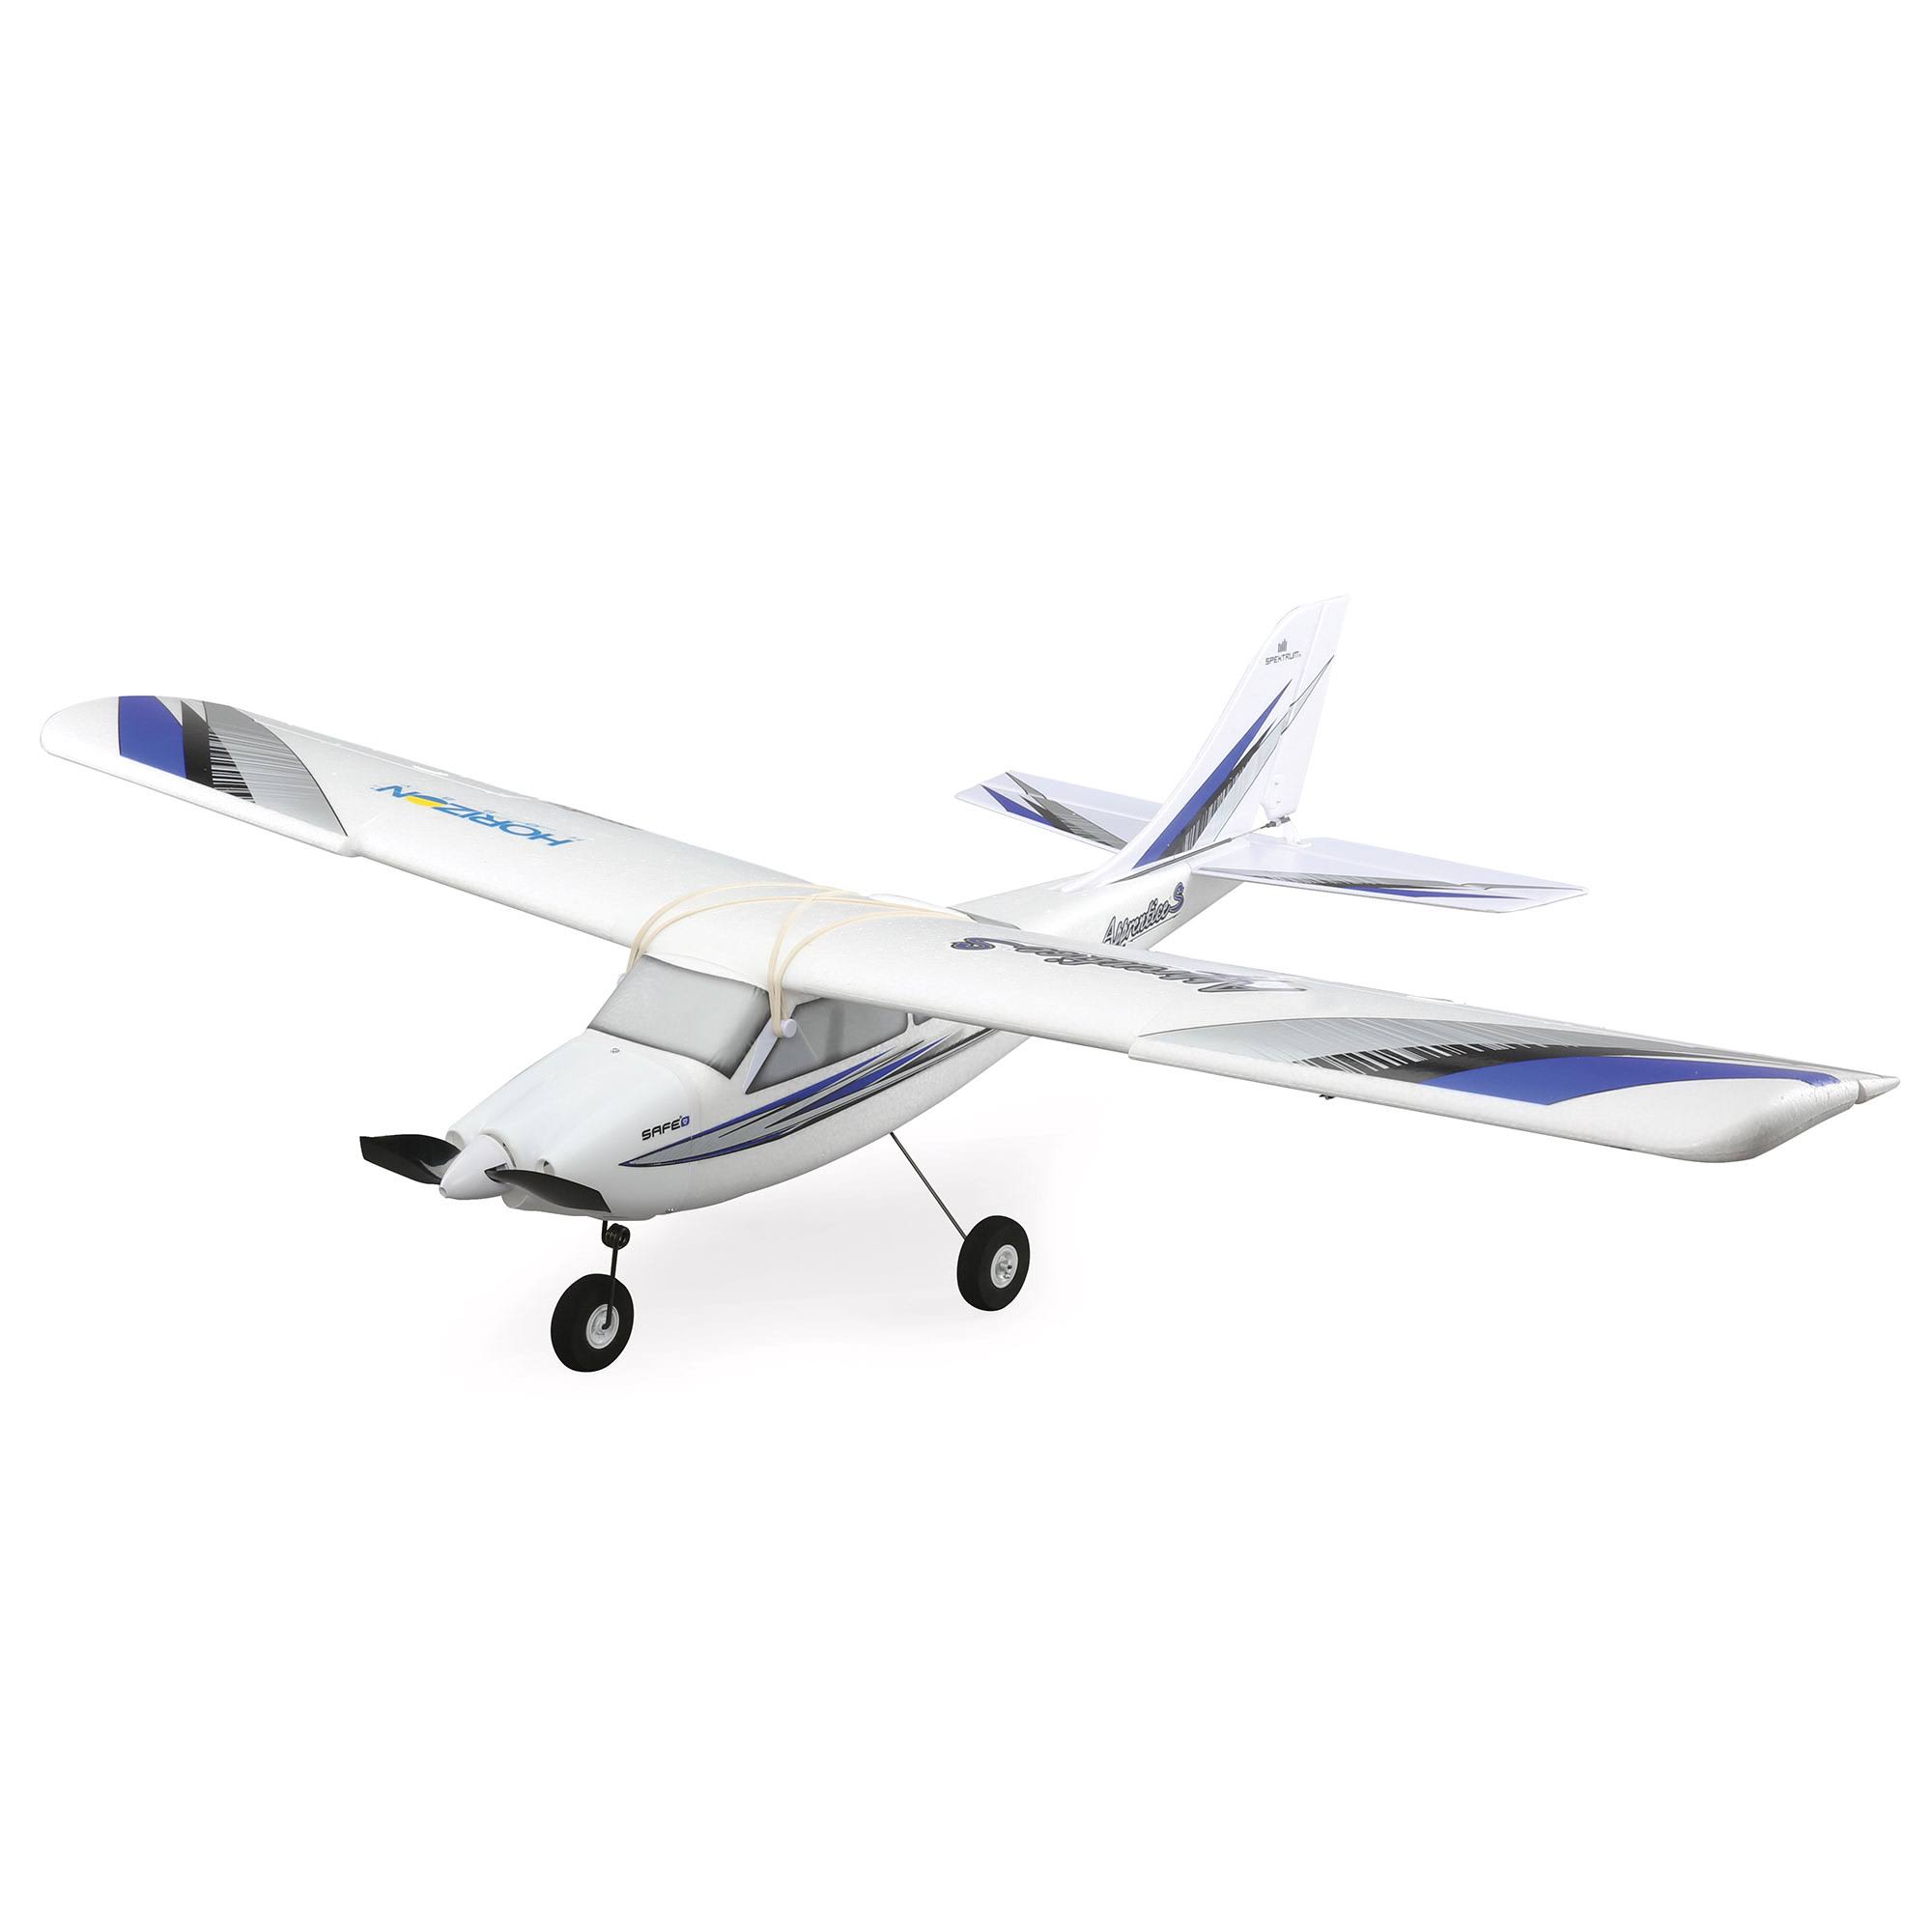 Hobbyzone Apprentice S 2 1.2m RC Plane, RTF Mode 2 HBZ310001